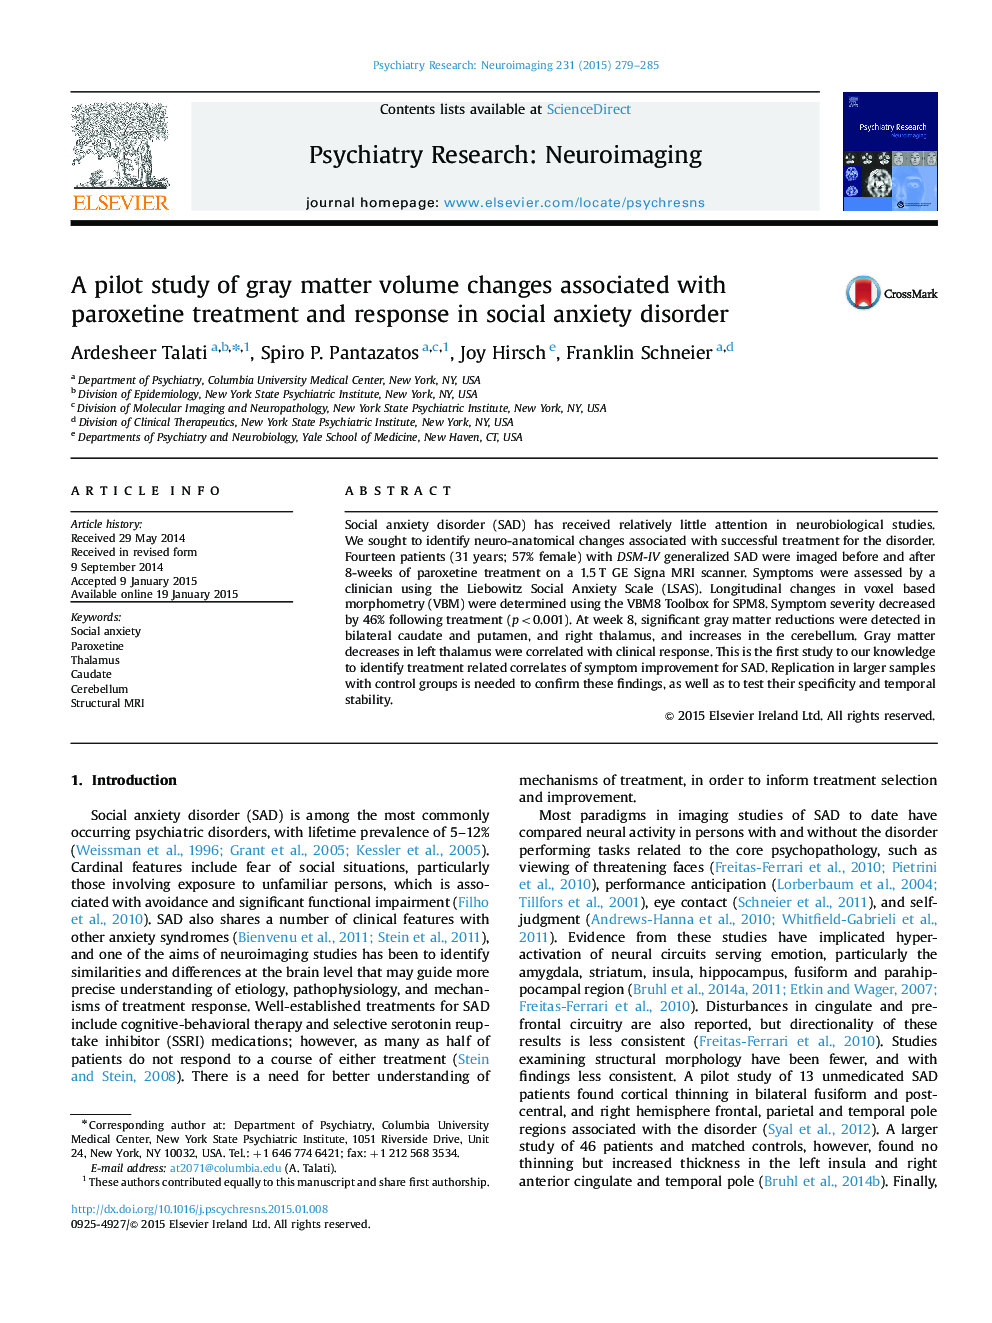 یک مطالعه آزمایشی از تغییرات حجم خاکستری در ارتباط با درمان پاروکستین و پاسخ در اختلال اضطراب اجتماعی 